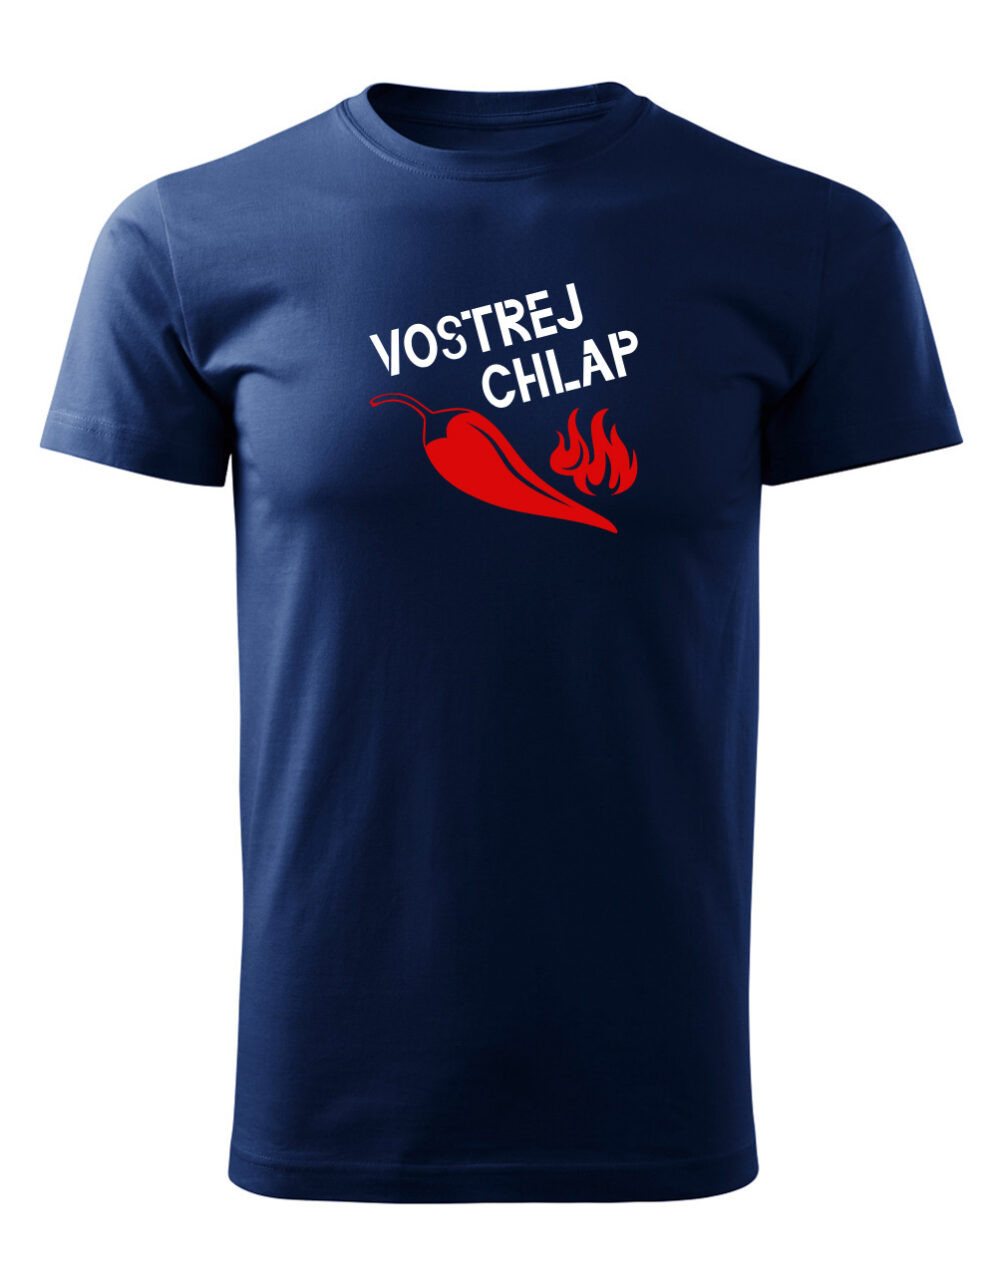 Pánské tričko s potiskem Vostrej chlap námořnická modrá